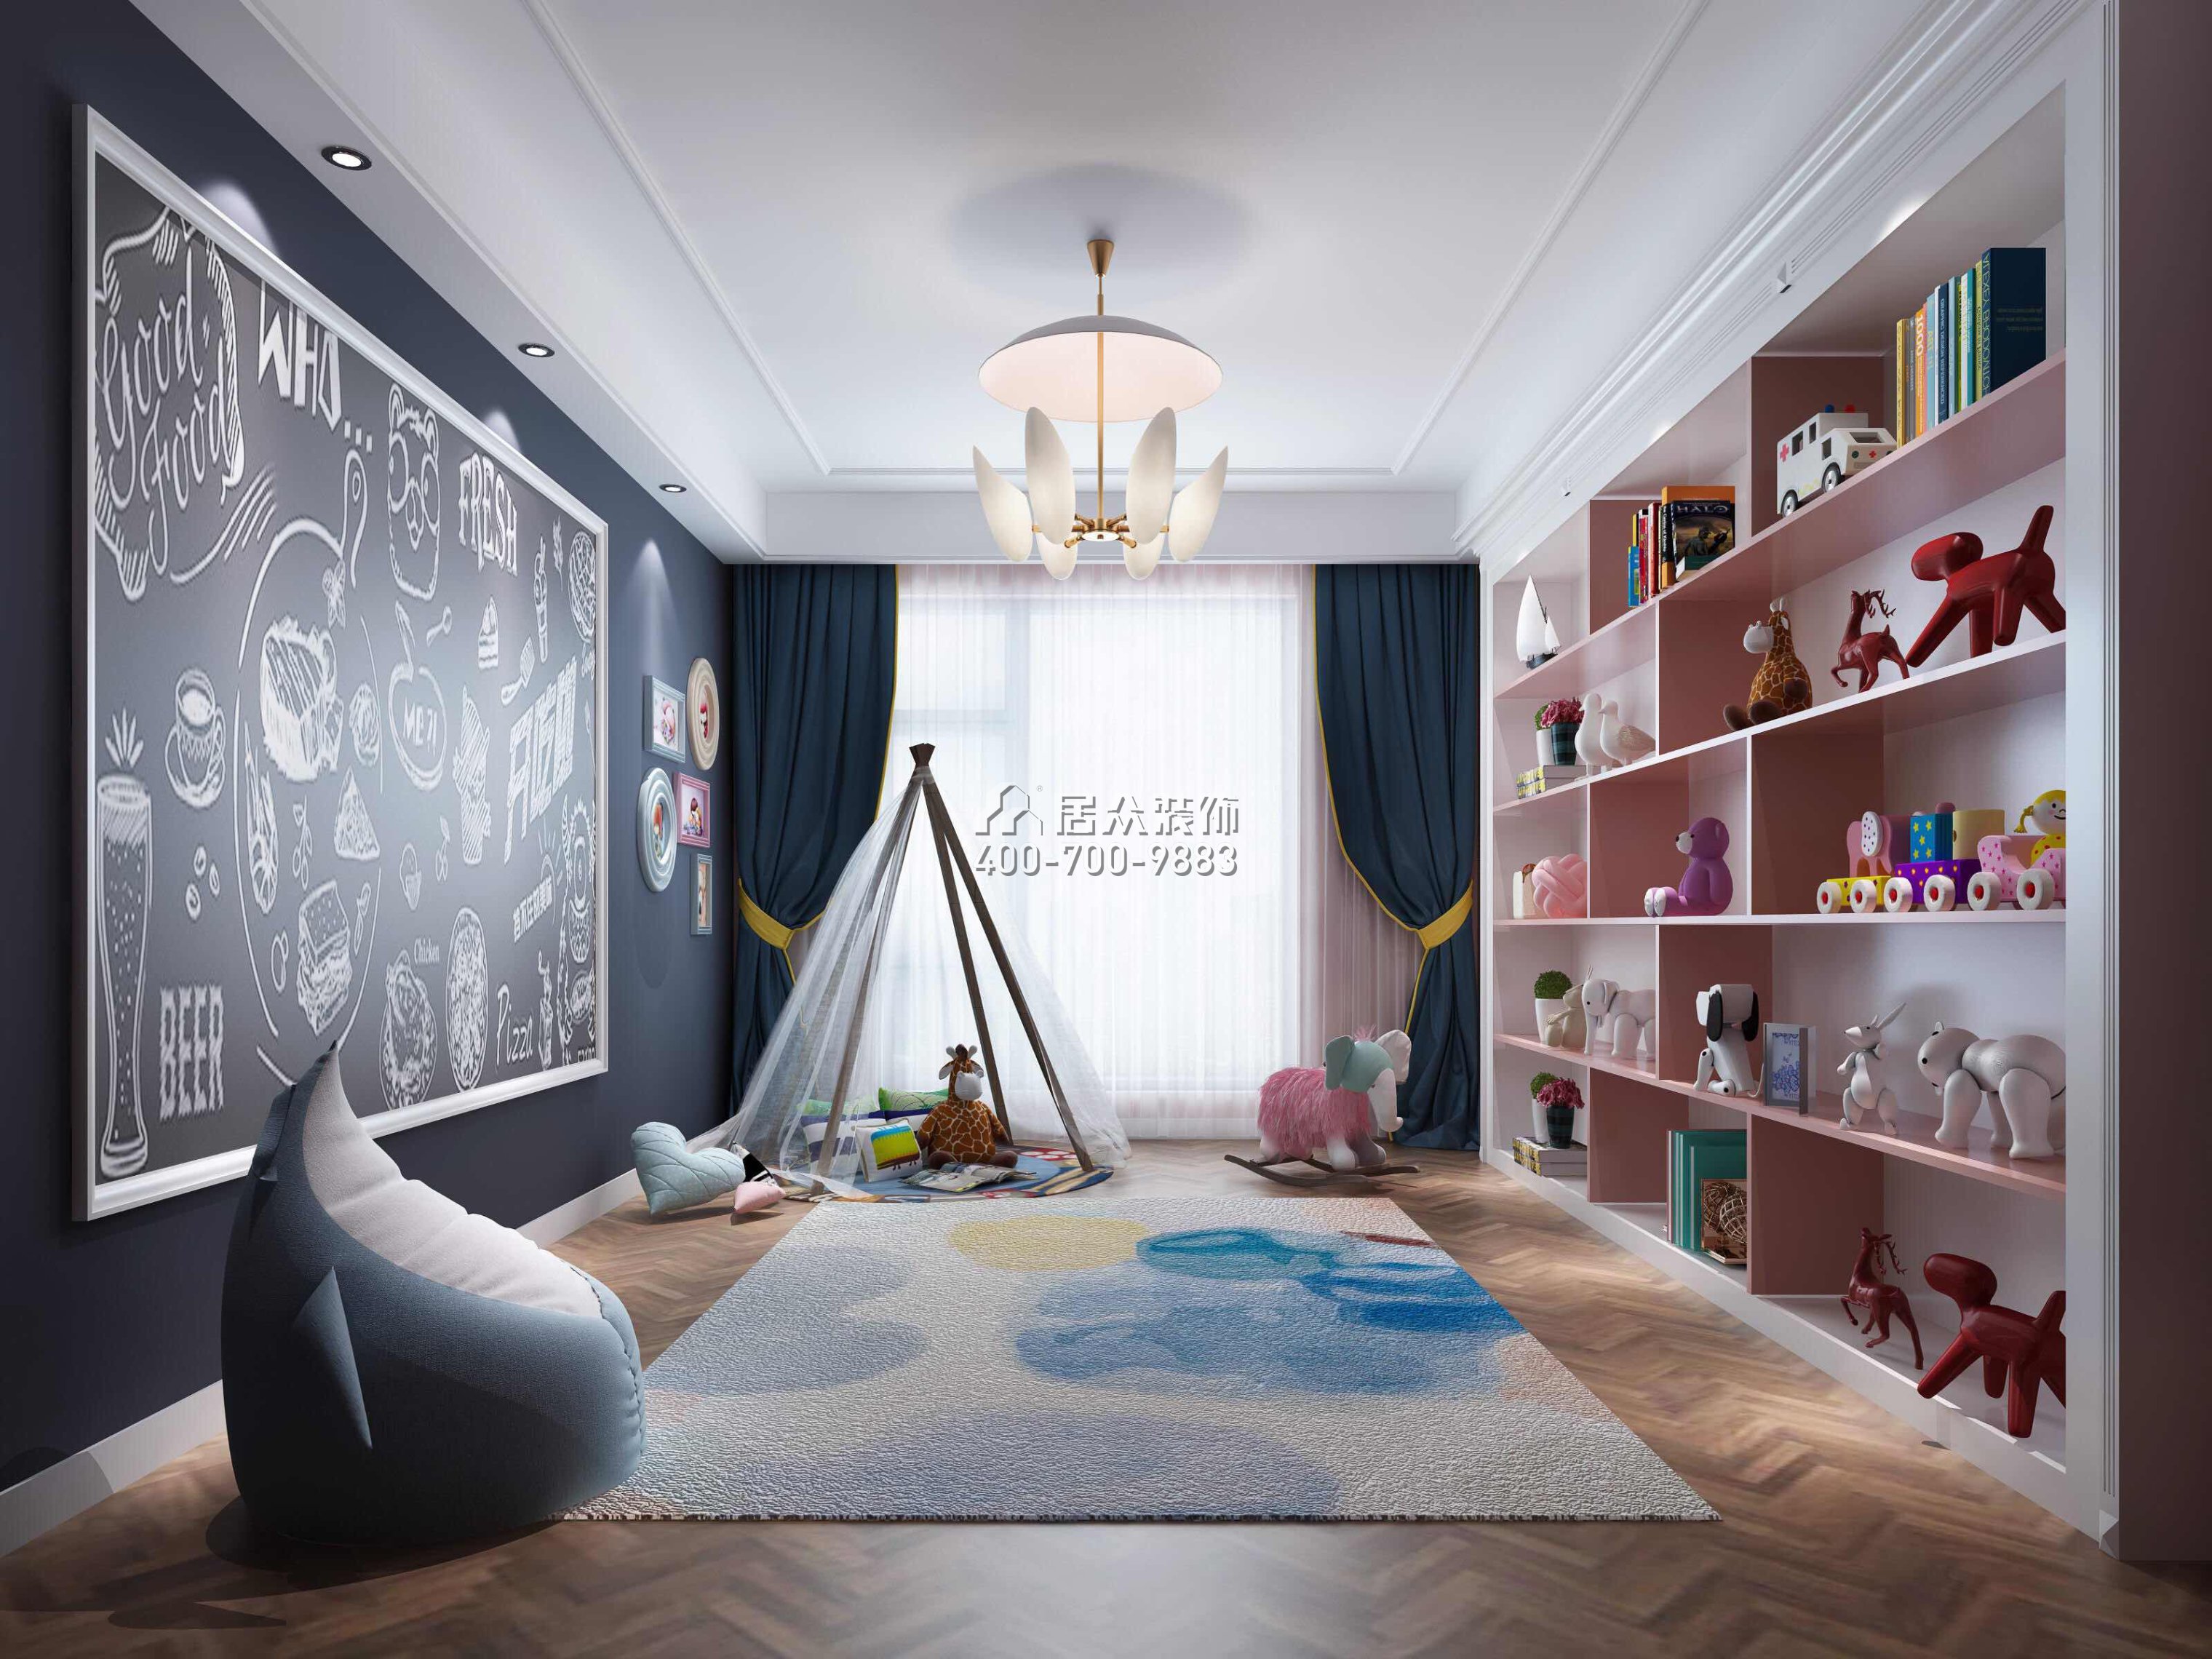 万科皇马郦宫241平方米现代简约风格平层户型儿童房装修效果图